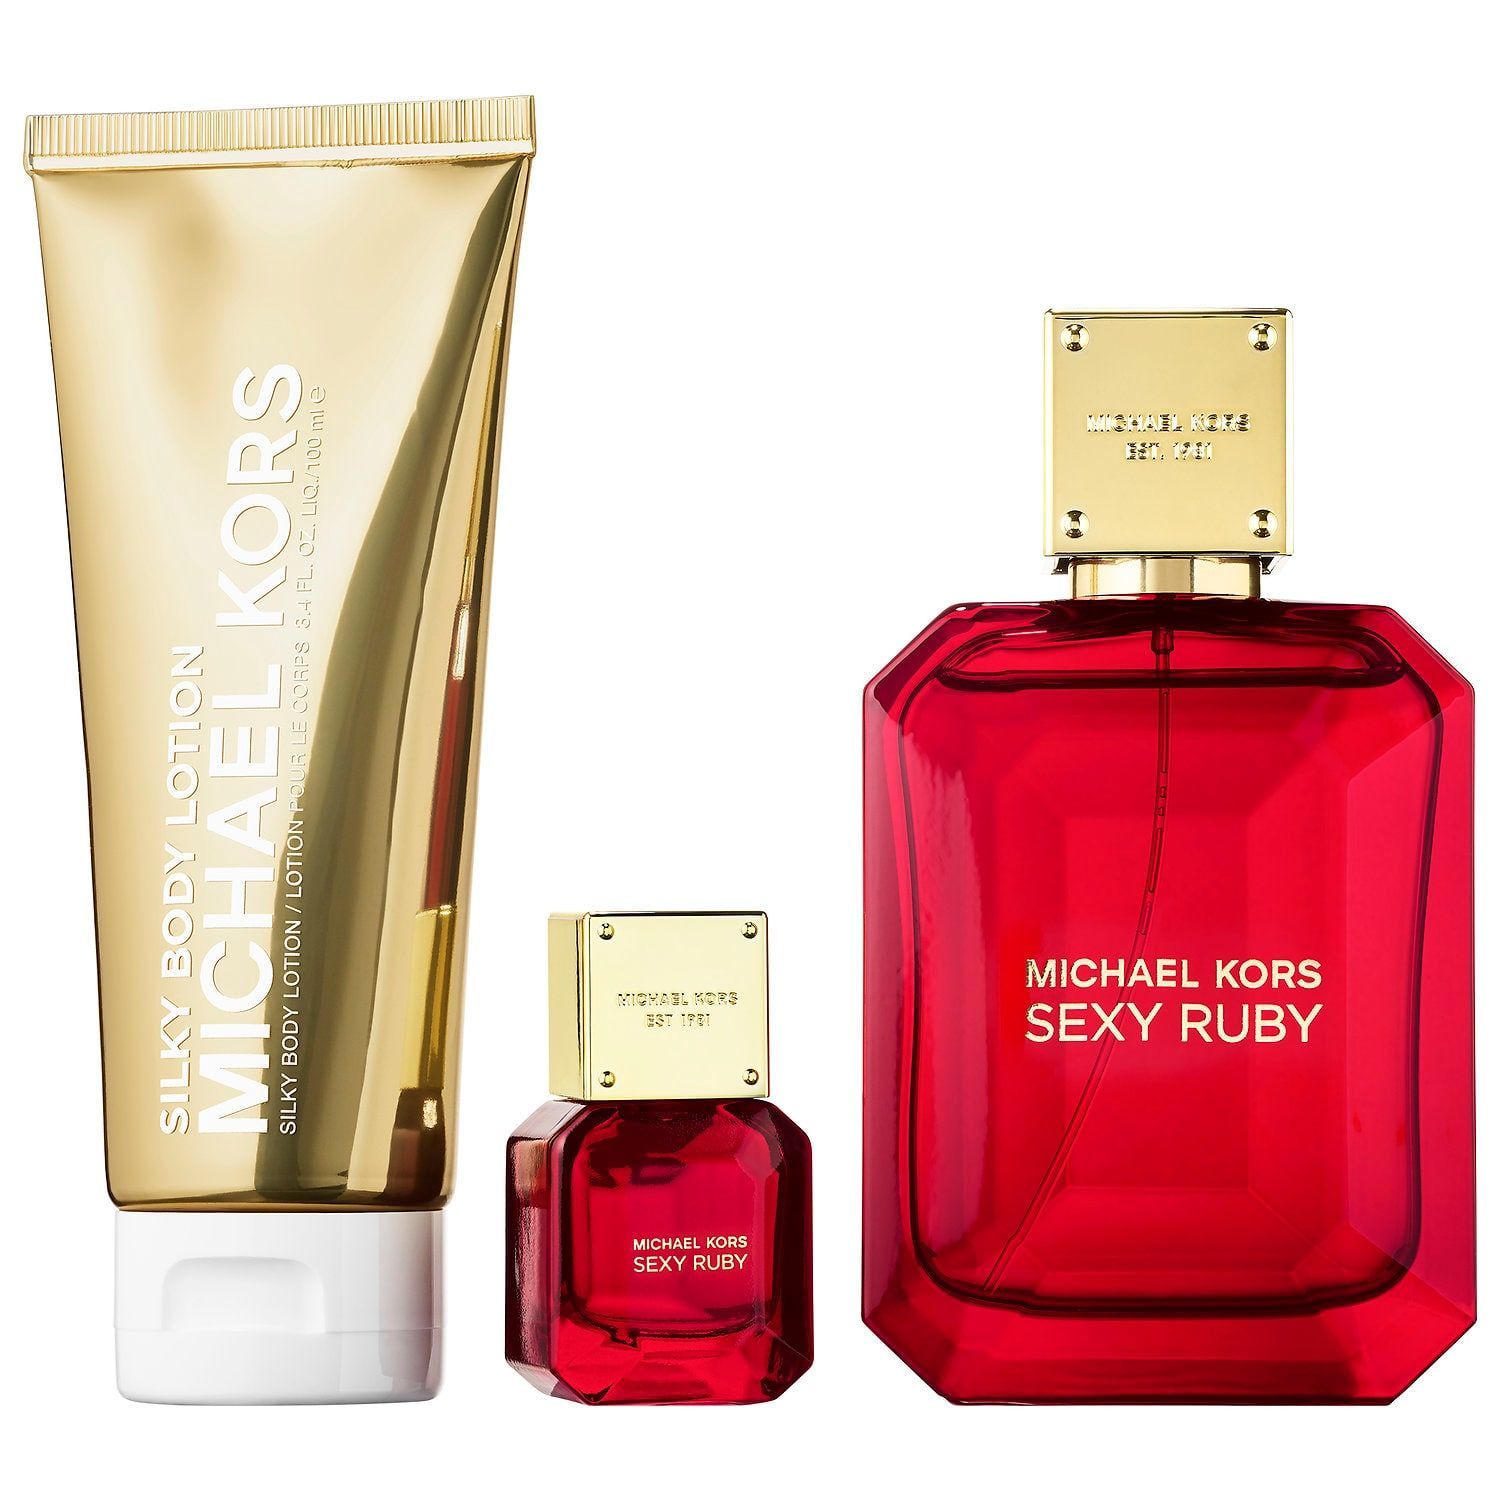 Michael Kors Rose Gold Perfume Gift Set Store  azccomco 1692102644